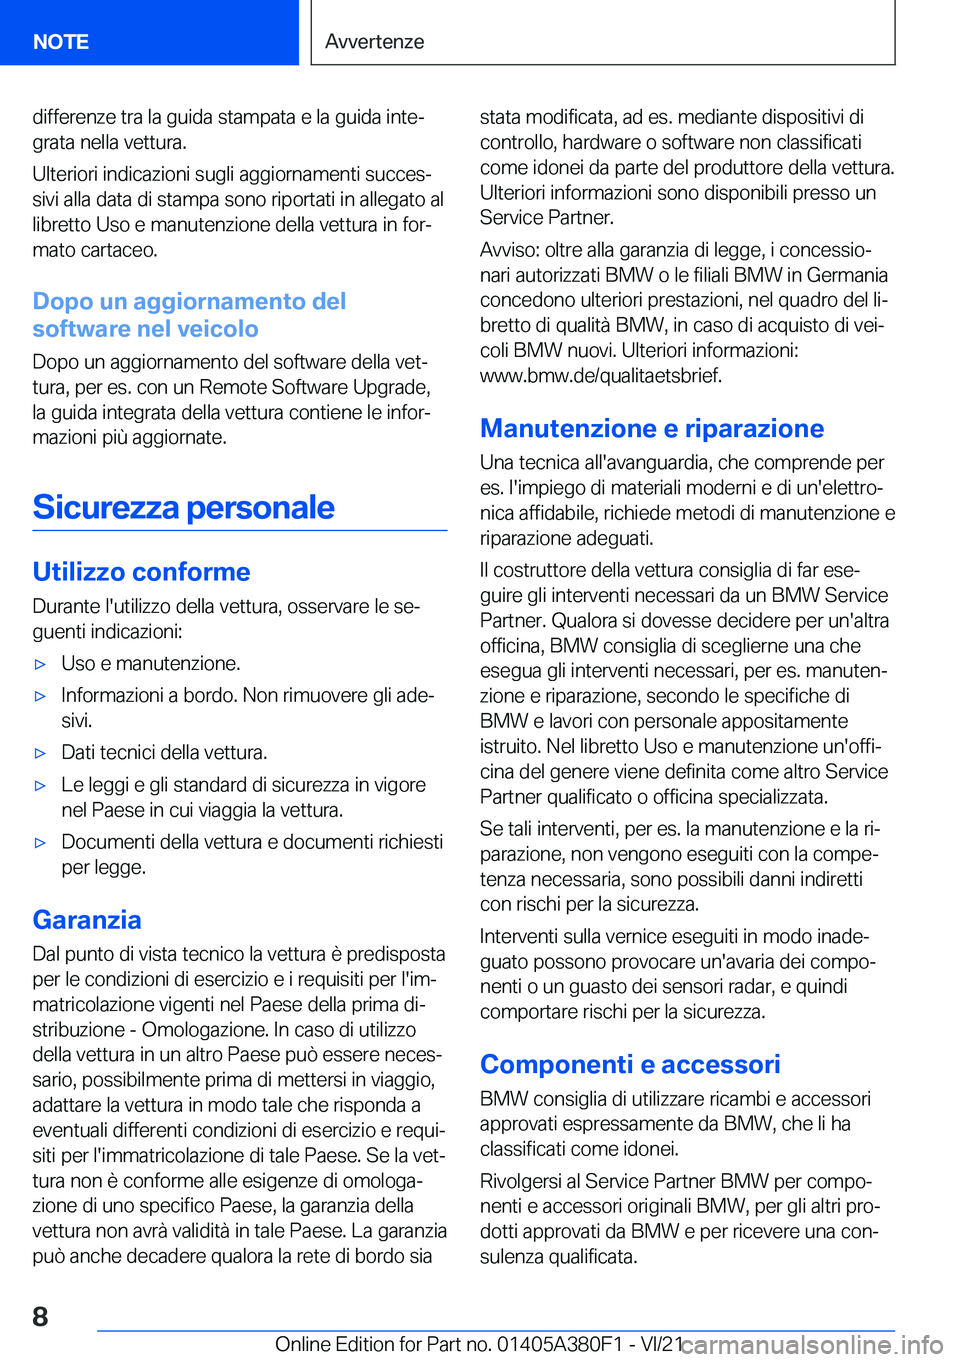 BMW 5 SERIES 2022  Libretti Di Uso E manutenzione (in Italian) �d�i�f�f�e�r�e�n�z�e��t�r�a��l�a��g�u�i�d�a��s�t�a�m�p�a�t�a��e��l�a��g�u�i�d�a��i�n�t�eª�g�r�a�t�a��n�e�l�l�a��v�e�t�t�u�r�a�.
�U�l�t�e�r�i�o�r�i��i�n�d�i�c�a�z�i�o�n�i��s�u�g�l�i��a�g